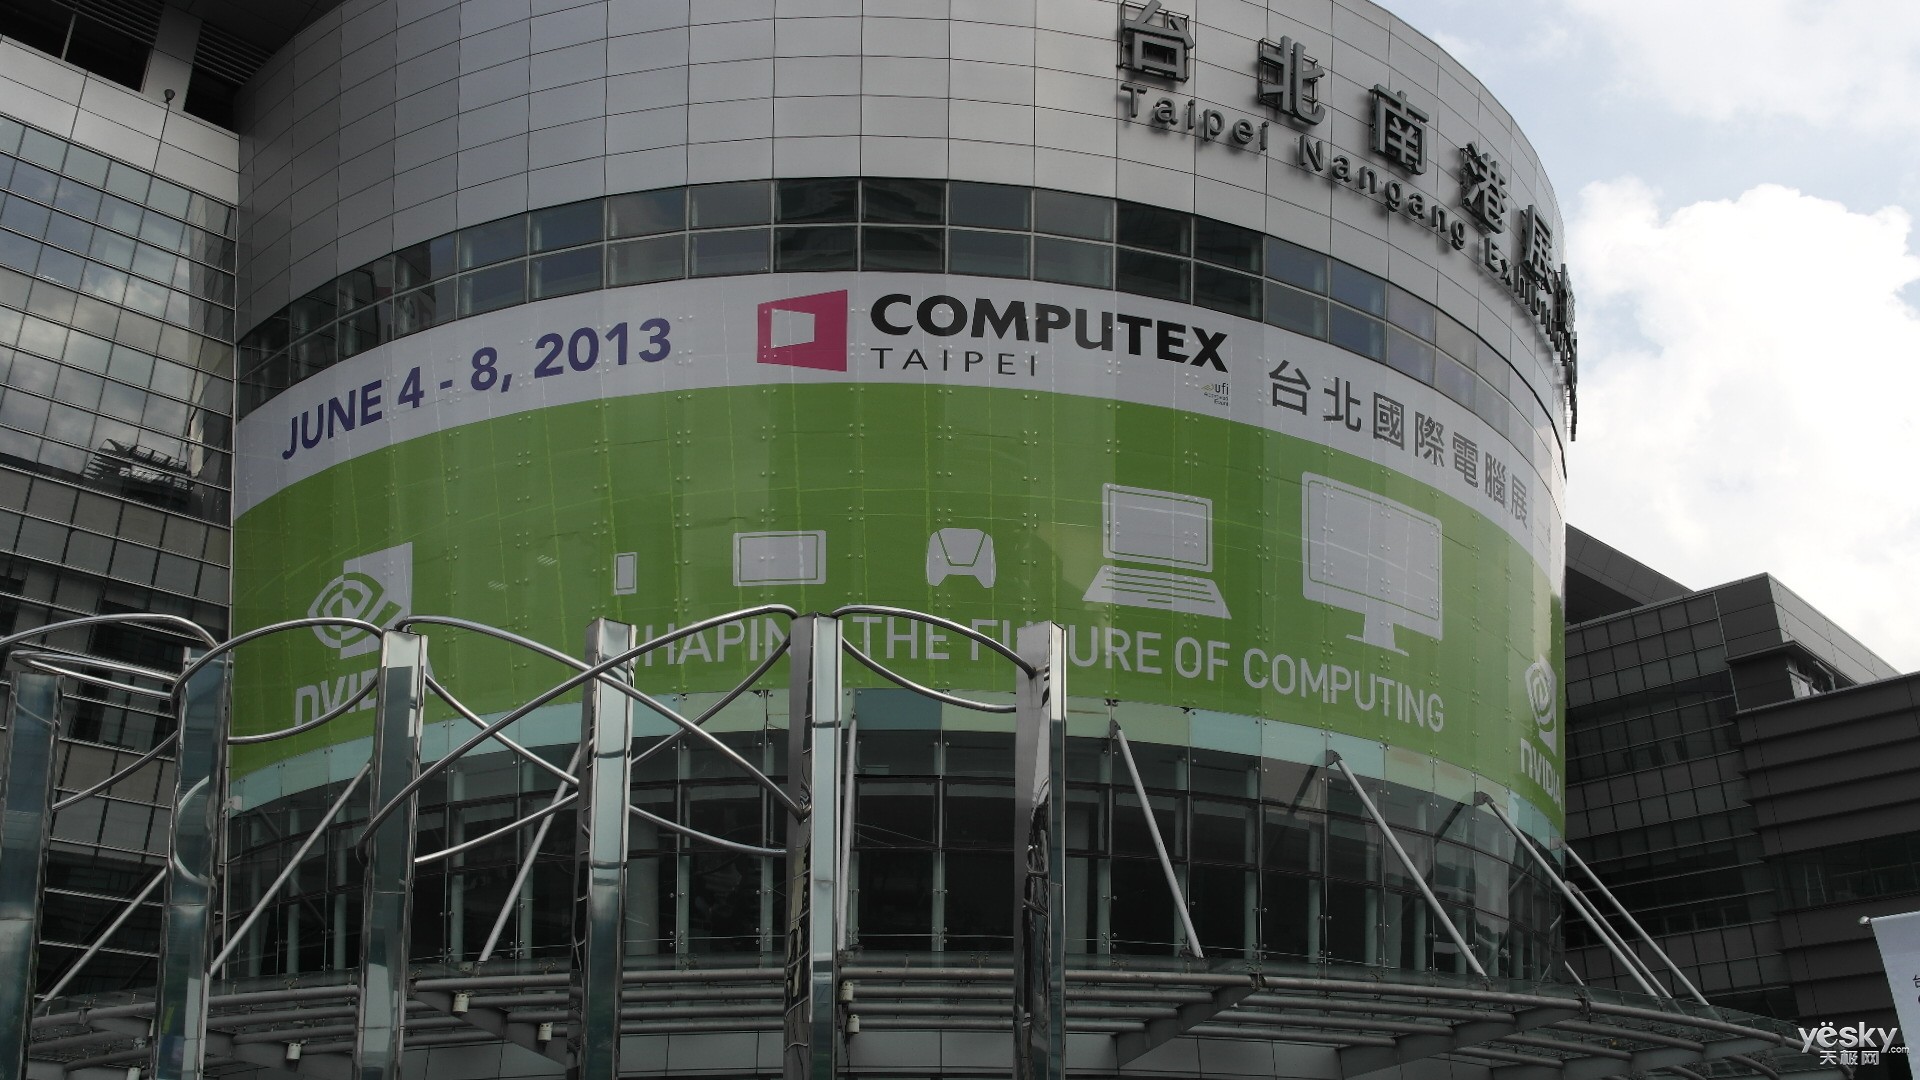 展会开始前,我们已经来到台北电脑展南港展馆,目前大多数展台